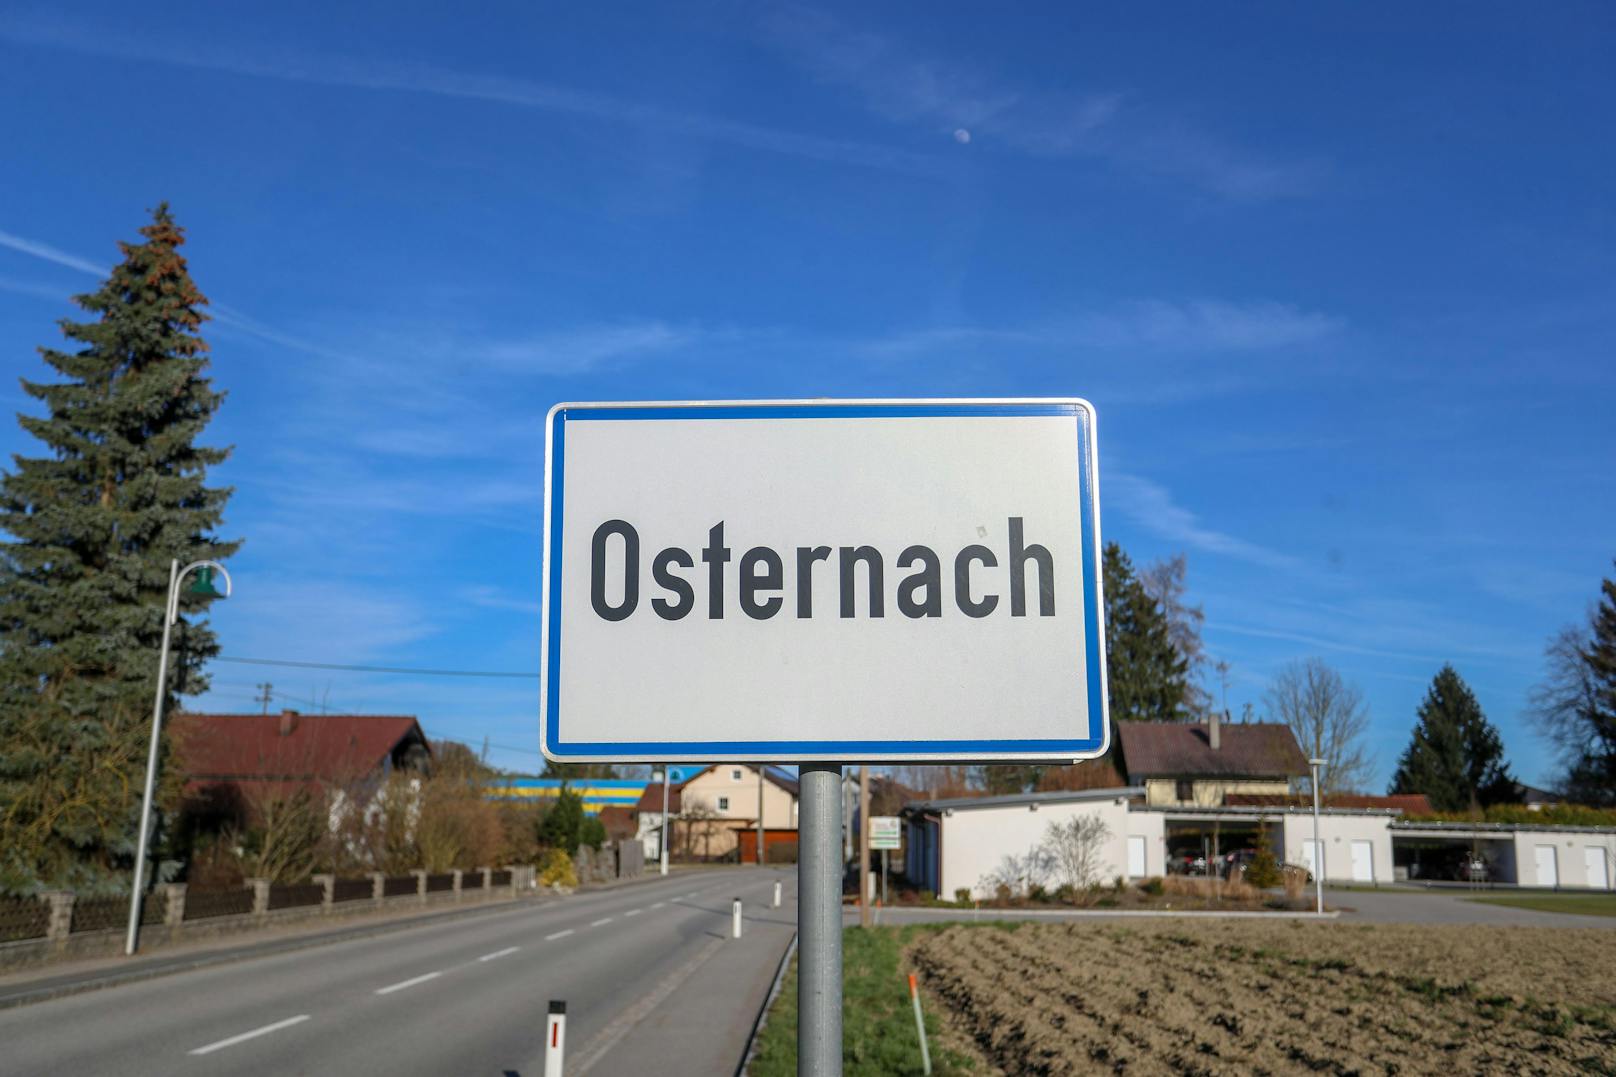 Unbekannte stahlen am Wochenende sieben Verkehrstafeln in der Ortschaft Osternach.